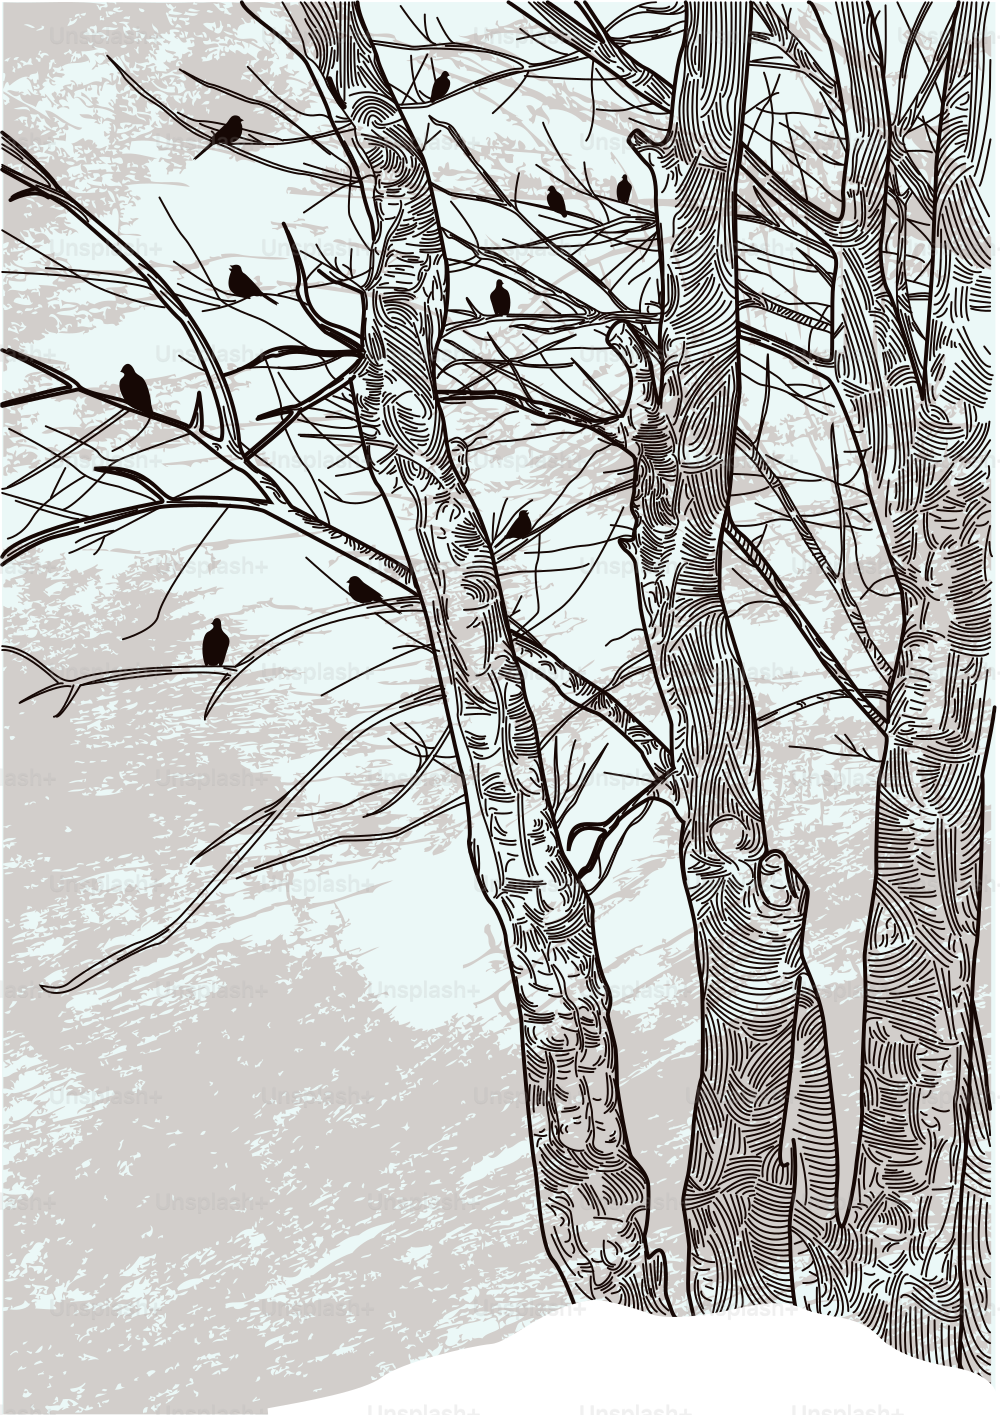 Una ilustración actualizada de algunos árboles invernales estériles.